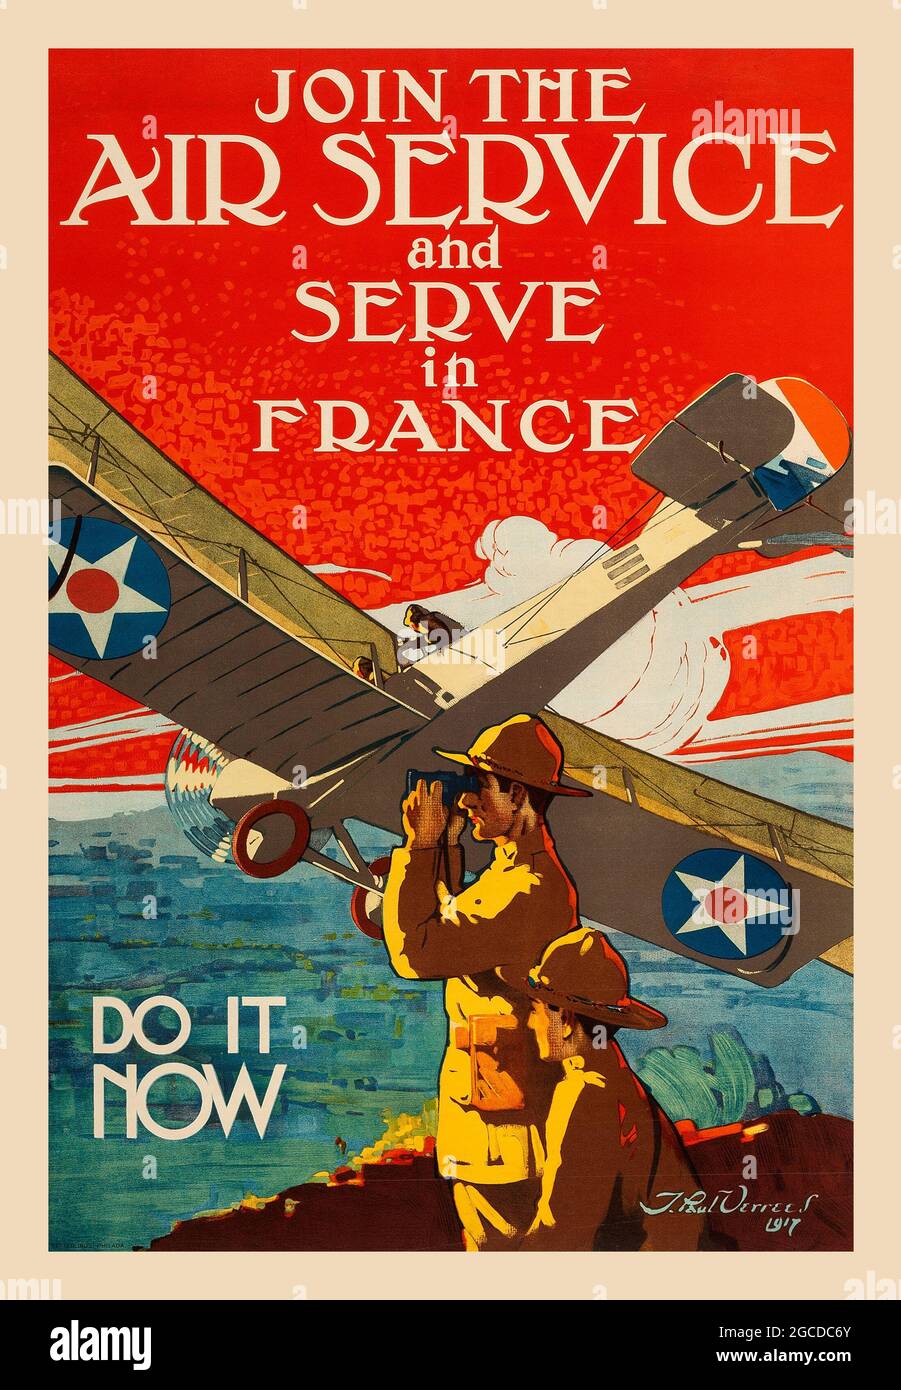 Propagande de la première Guerre mondiale (États-Unis Gouvernement, 1917). Affiche de recrutement « Rejoignez le Service aérien et servez en France. Faites-le maintenant. Banque D'Images